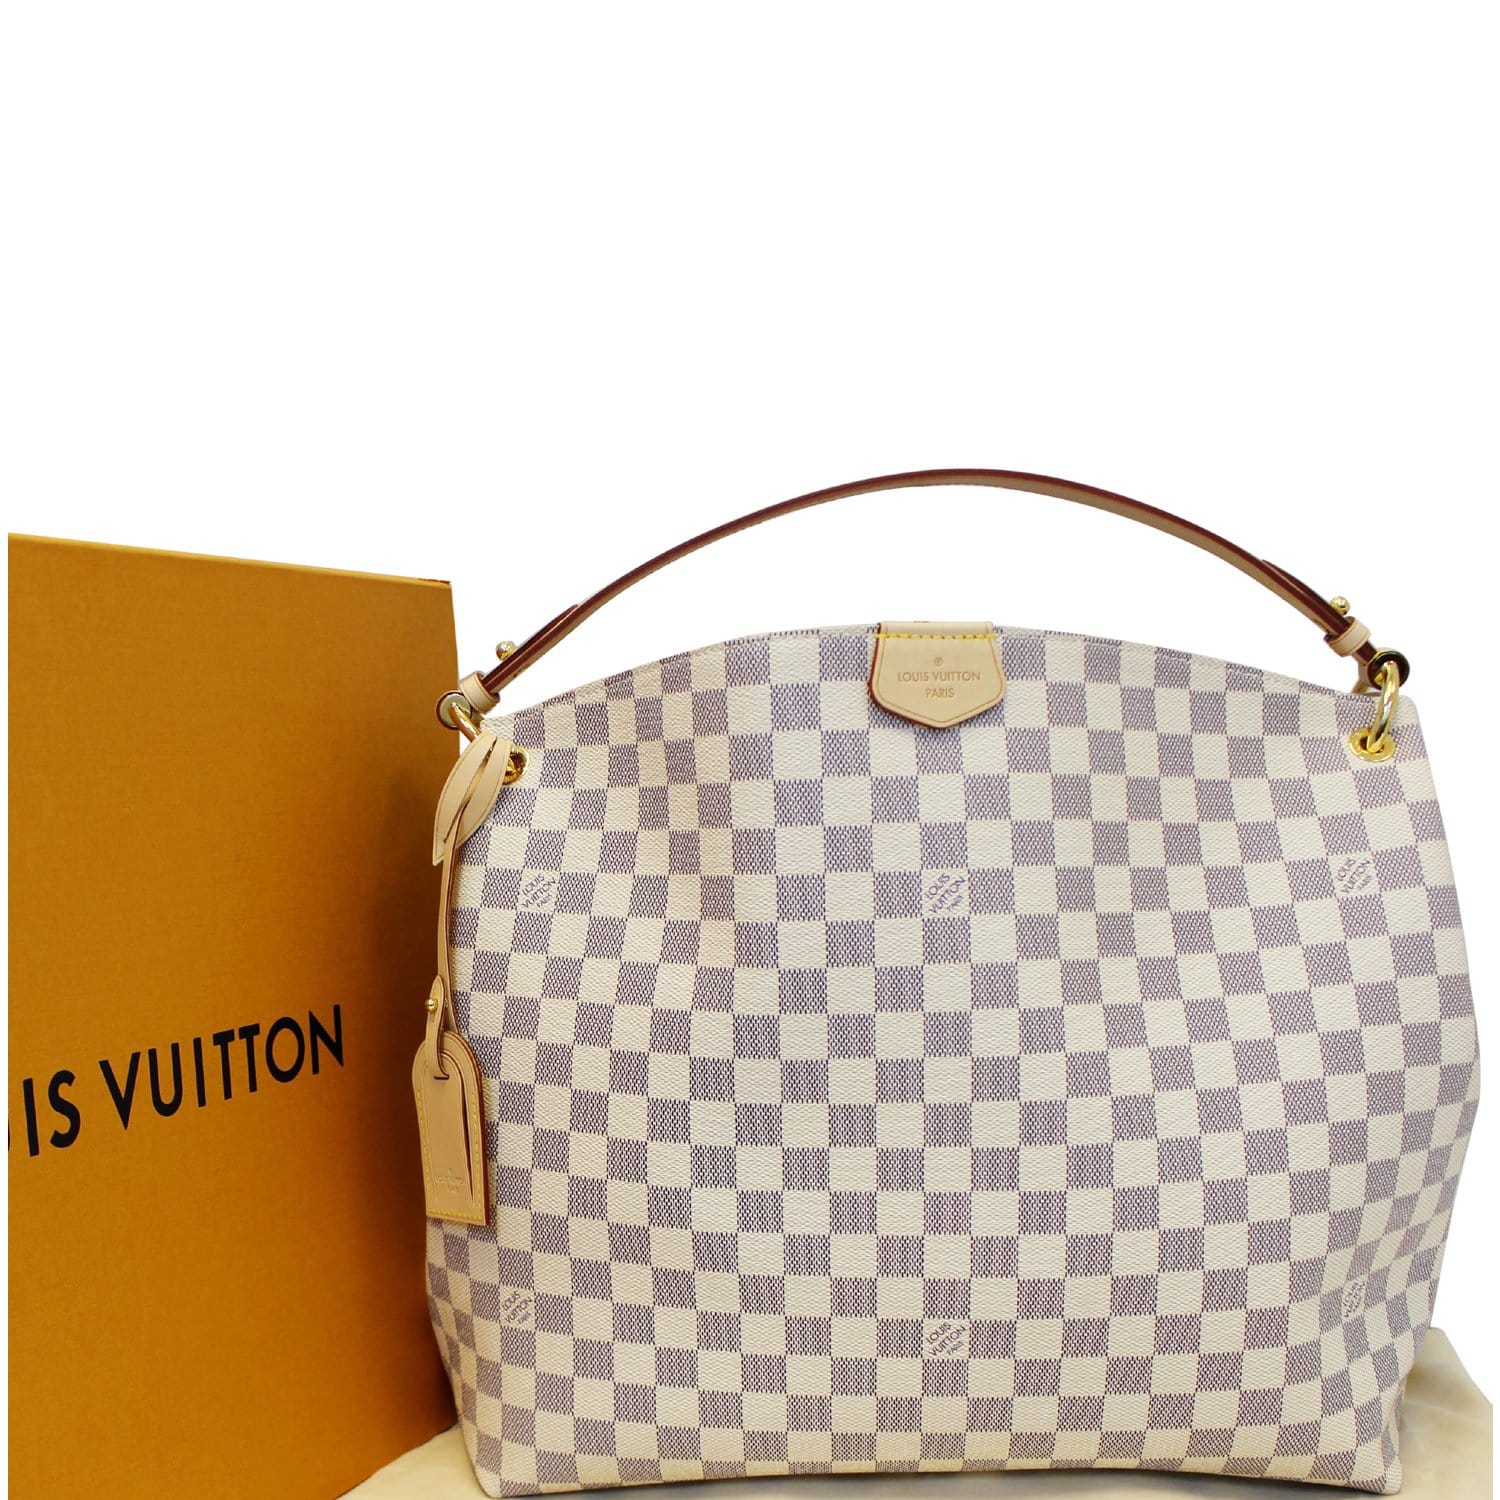 Comparison / Louis Vuitton Graceful MM & Delightful MM Damier